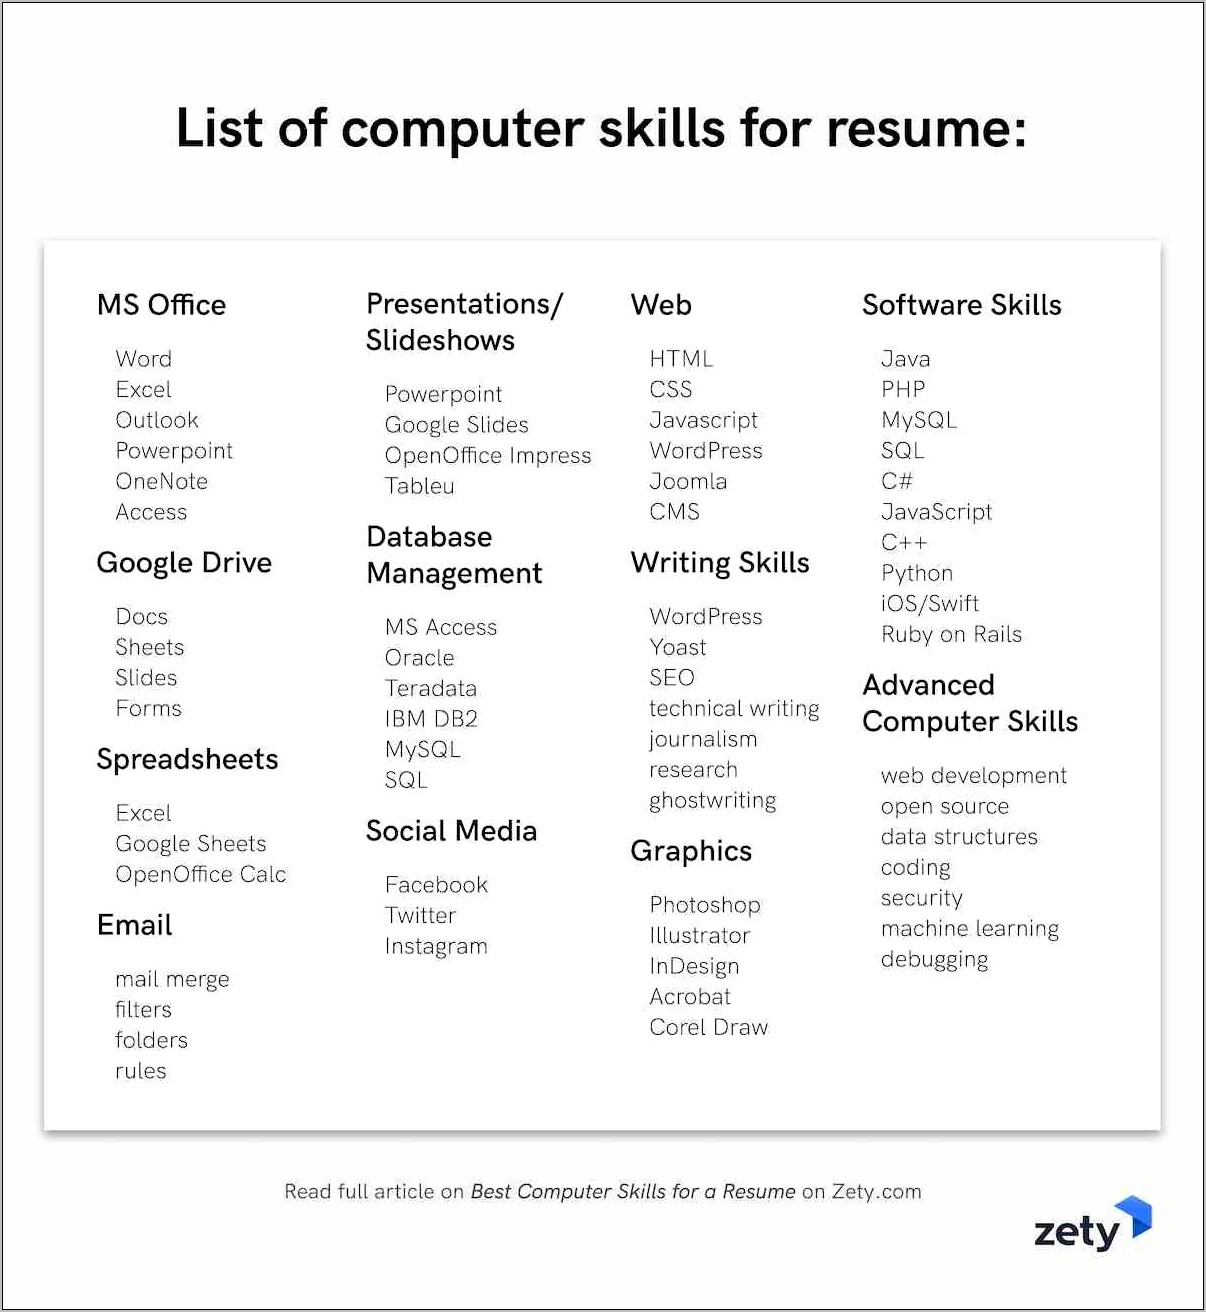 Important Skills To List On Resume